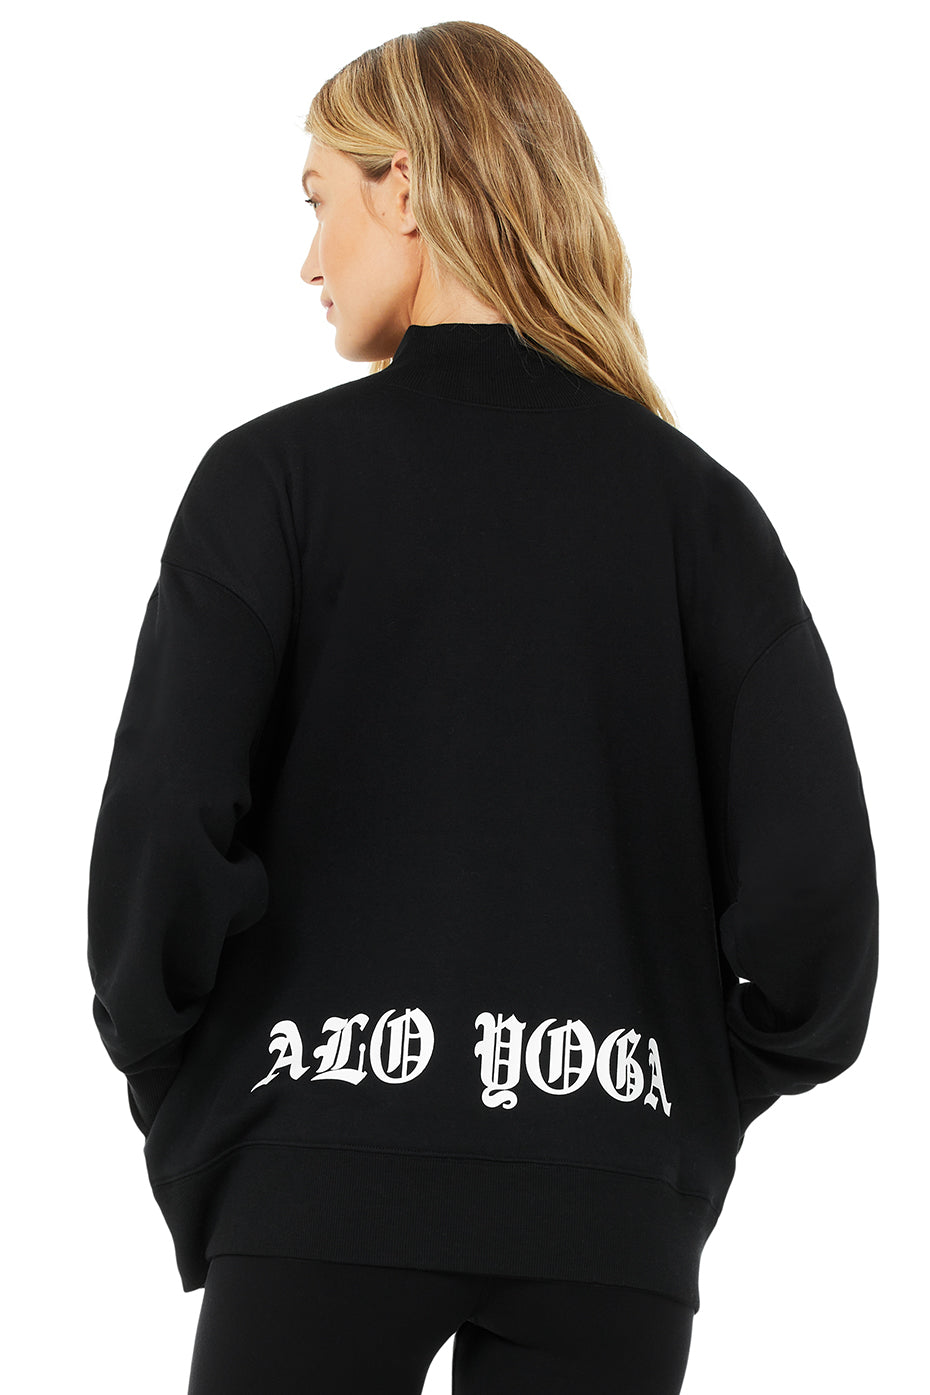 Alo Yoga Women's Freestyle Fleece Mock Neck Sweatshirt, Black, XS